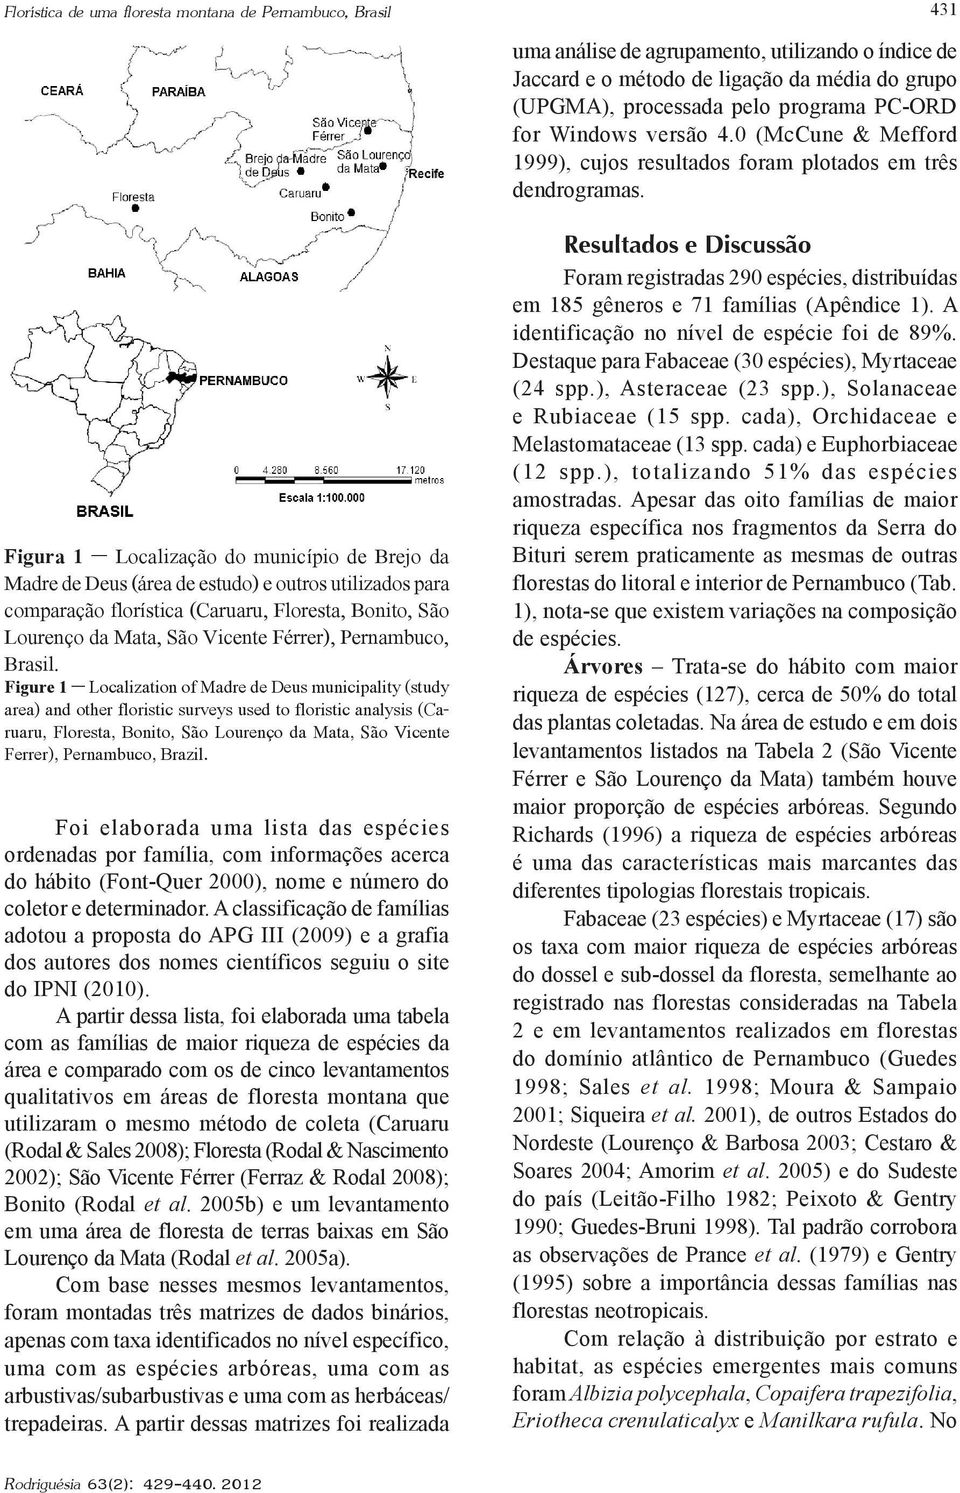 Figure 1 Localization of Madre de Deus municipality (study area) and other floristic surveys used to floristic analysis (Caruaru, Floresta, Bonito, São Lourenço da Mata, São Vicente Ferrer),